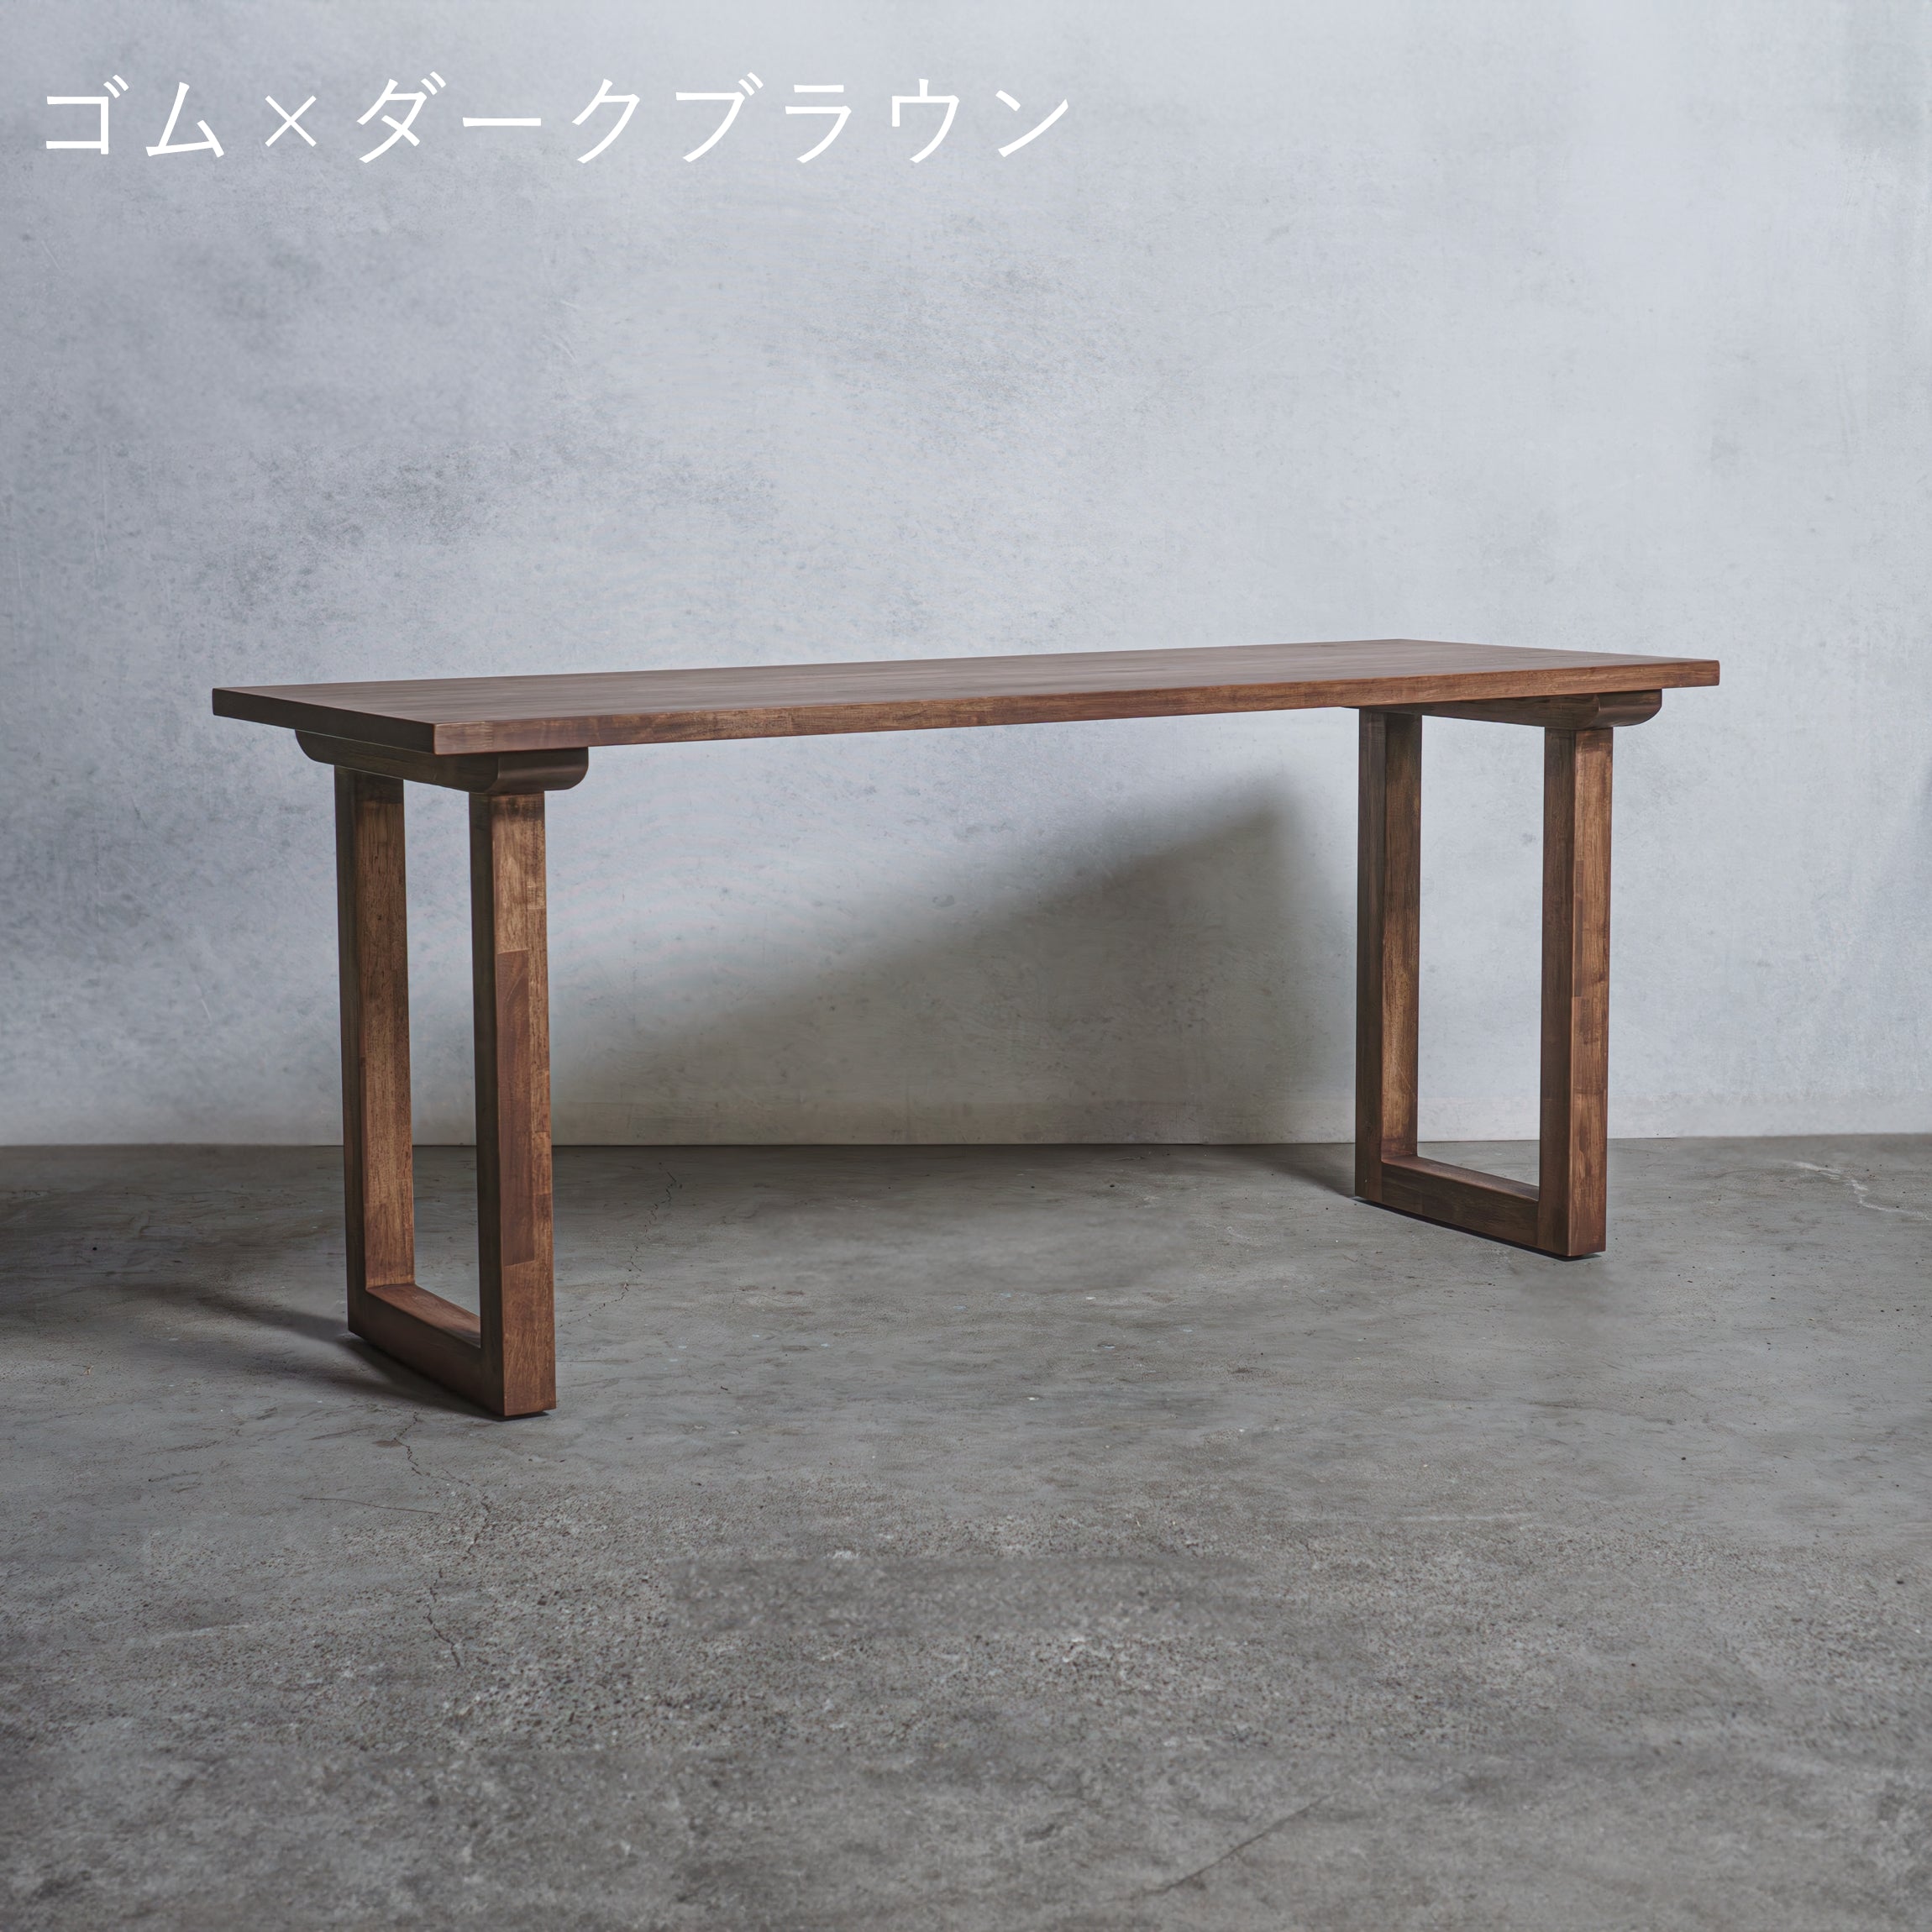 木製 テーブル / デスク ゴム材 口型 オーダーメイド【清水材木店】